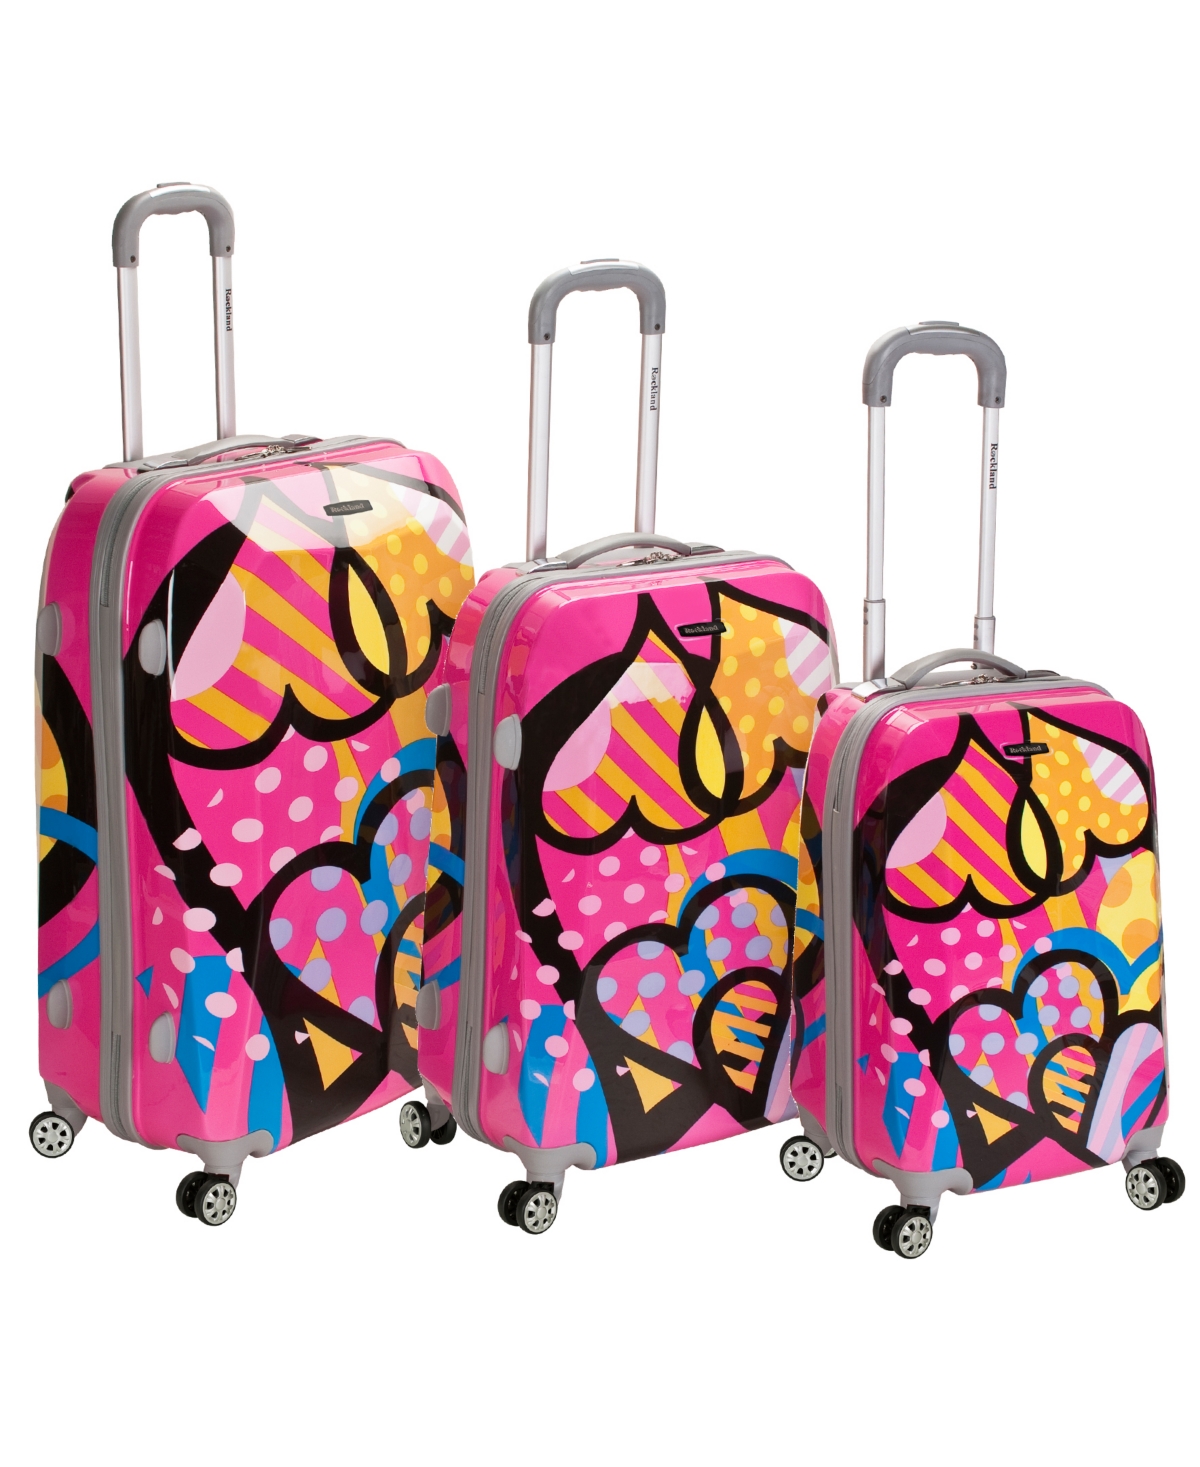 3-Pc. Hardside Luggage Set - Pink